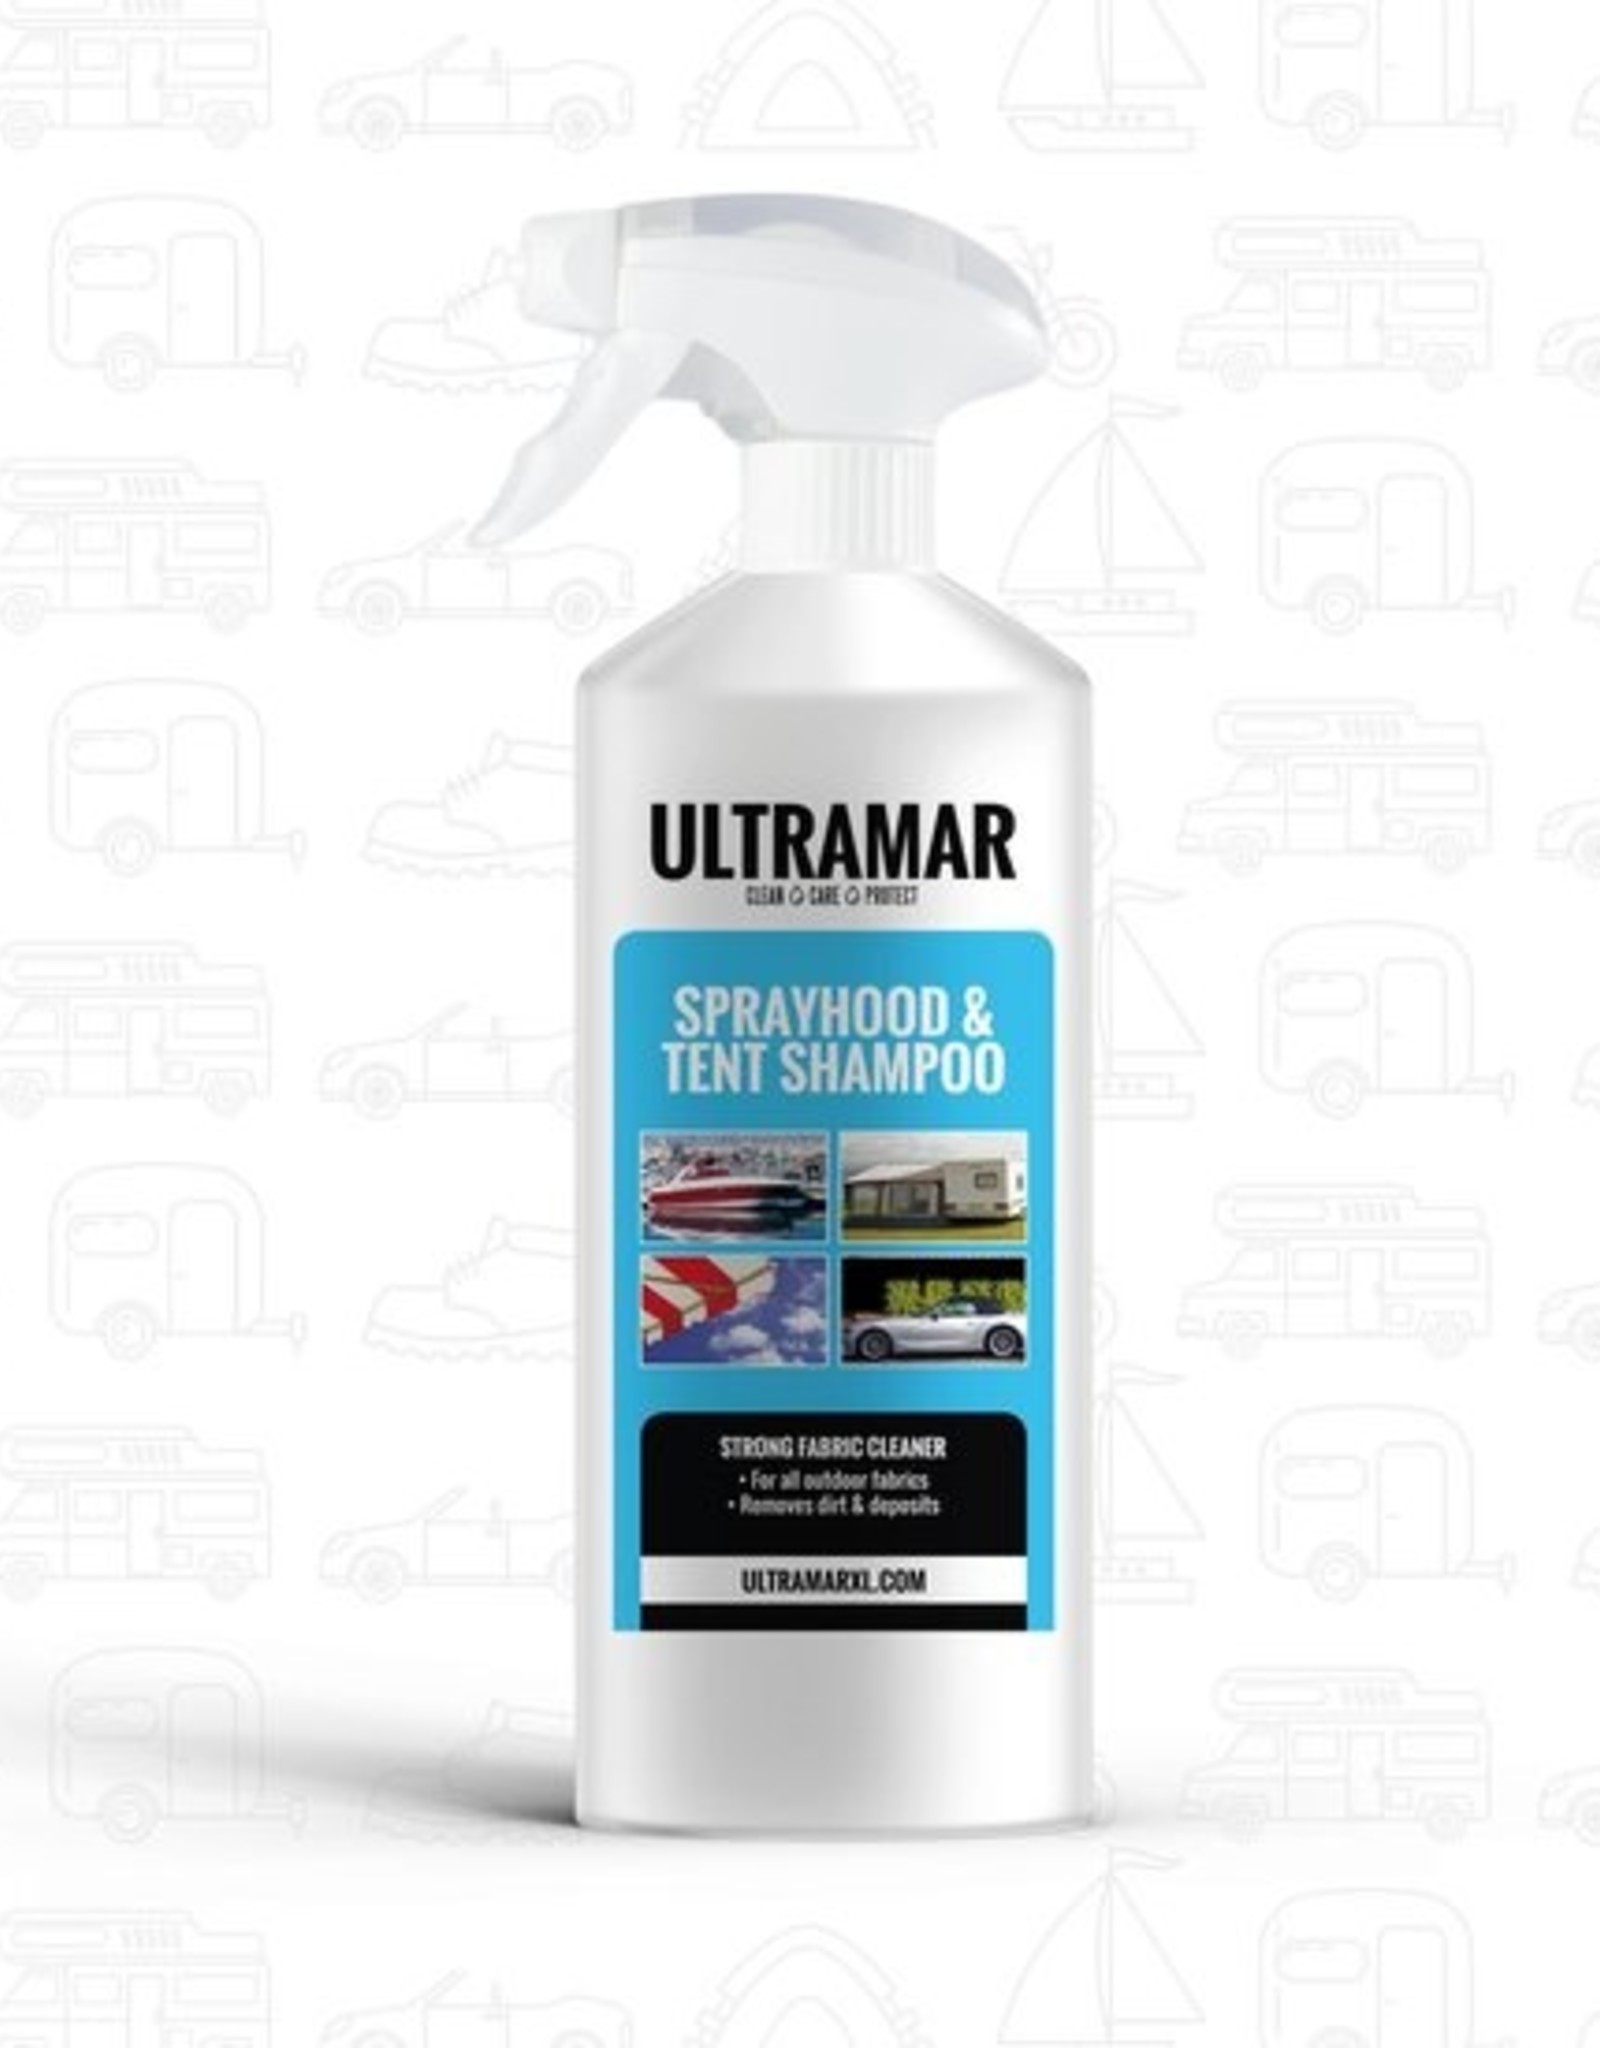 ultramar ultramar spray hood & tent shampoo